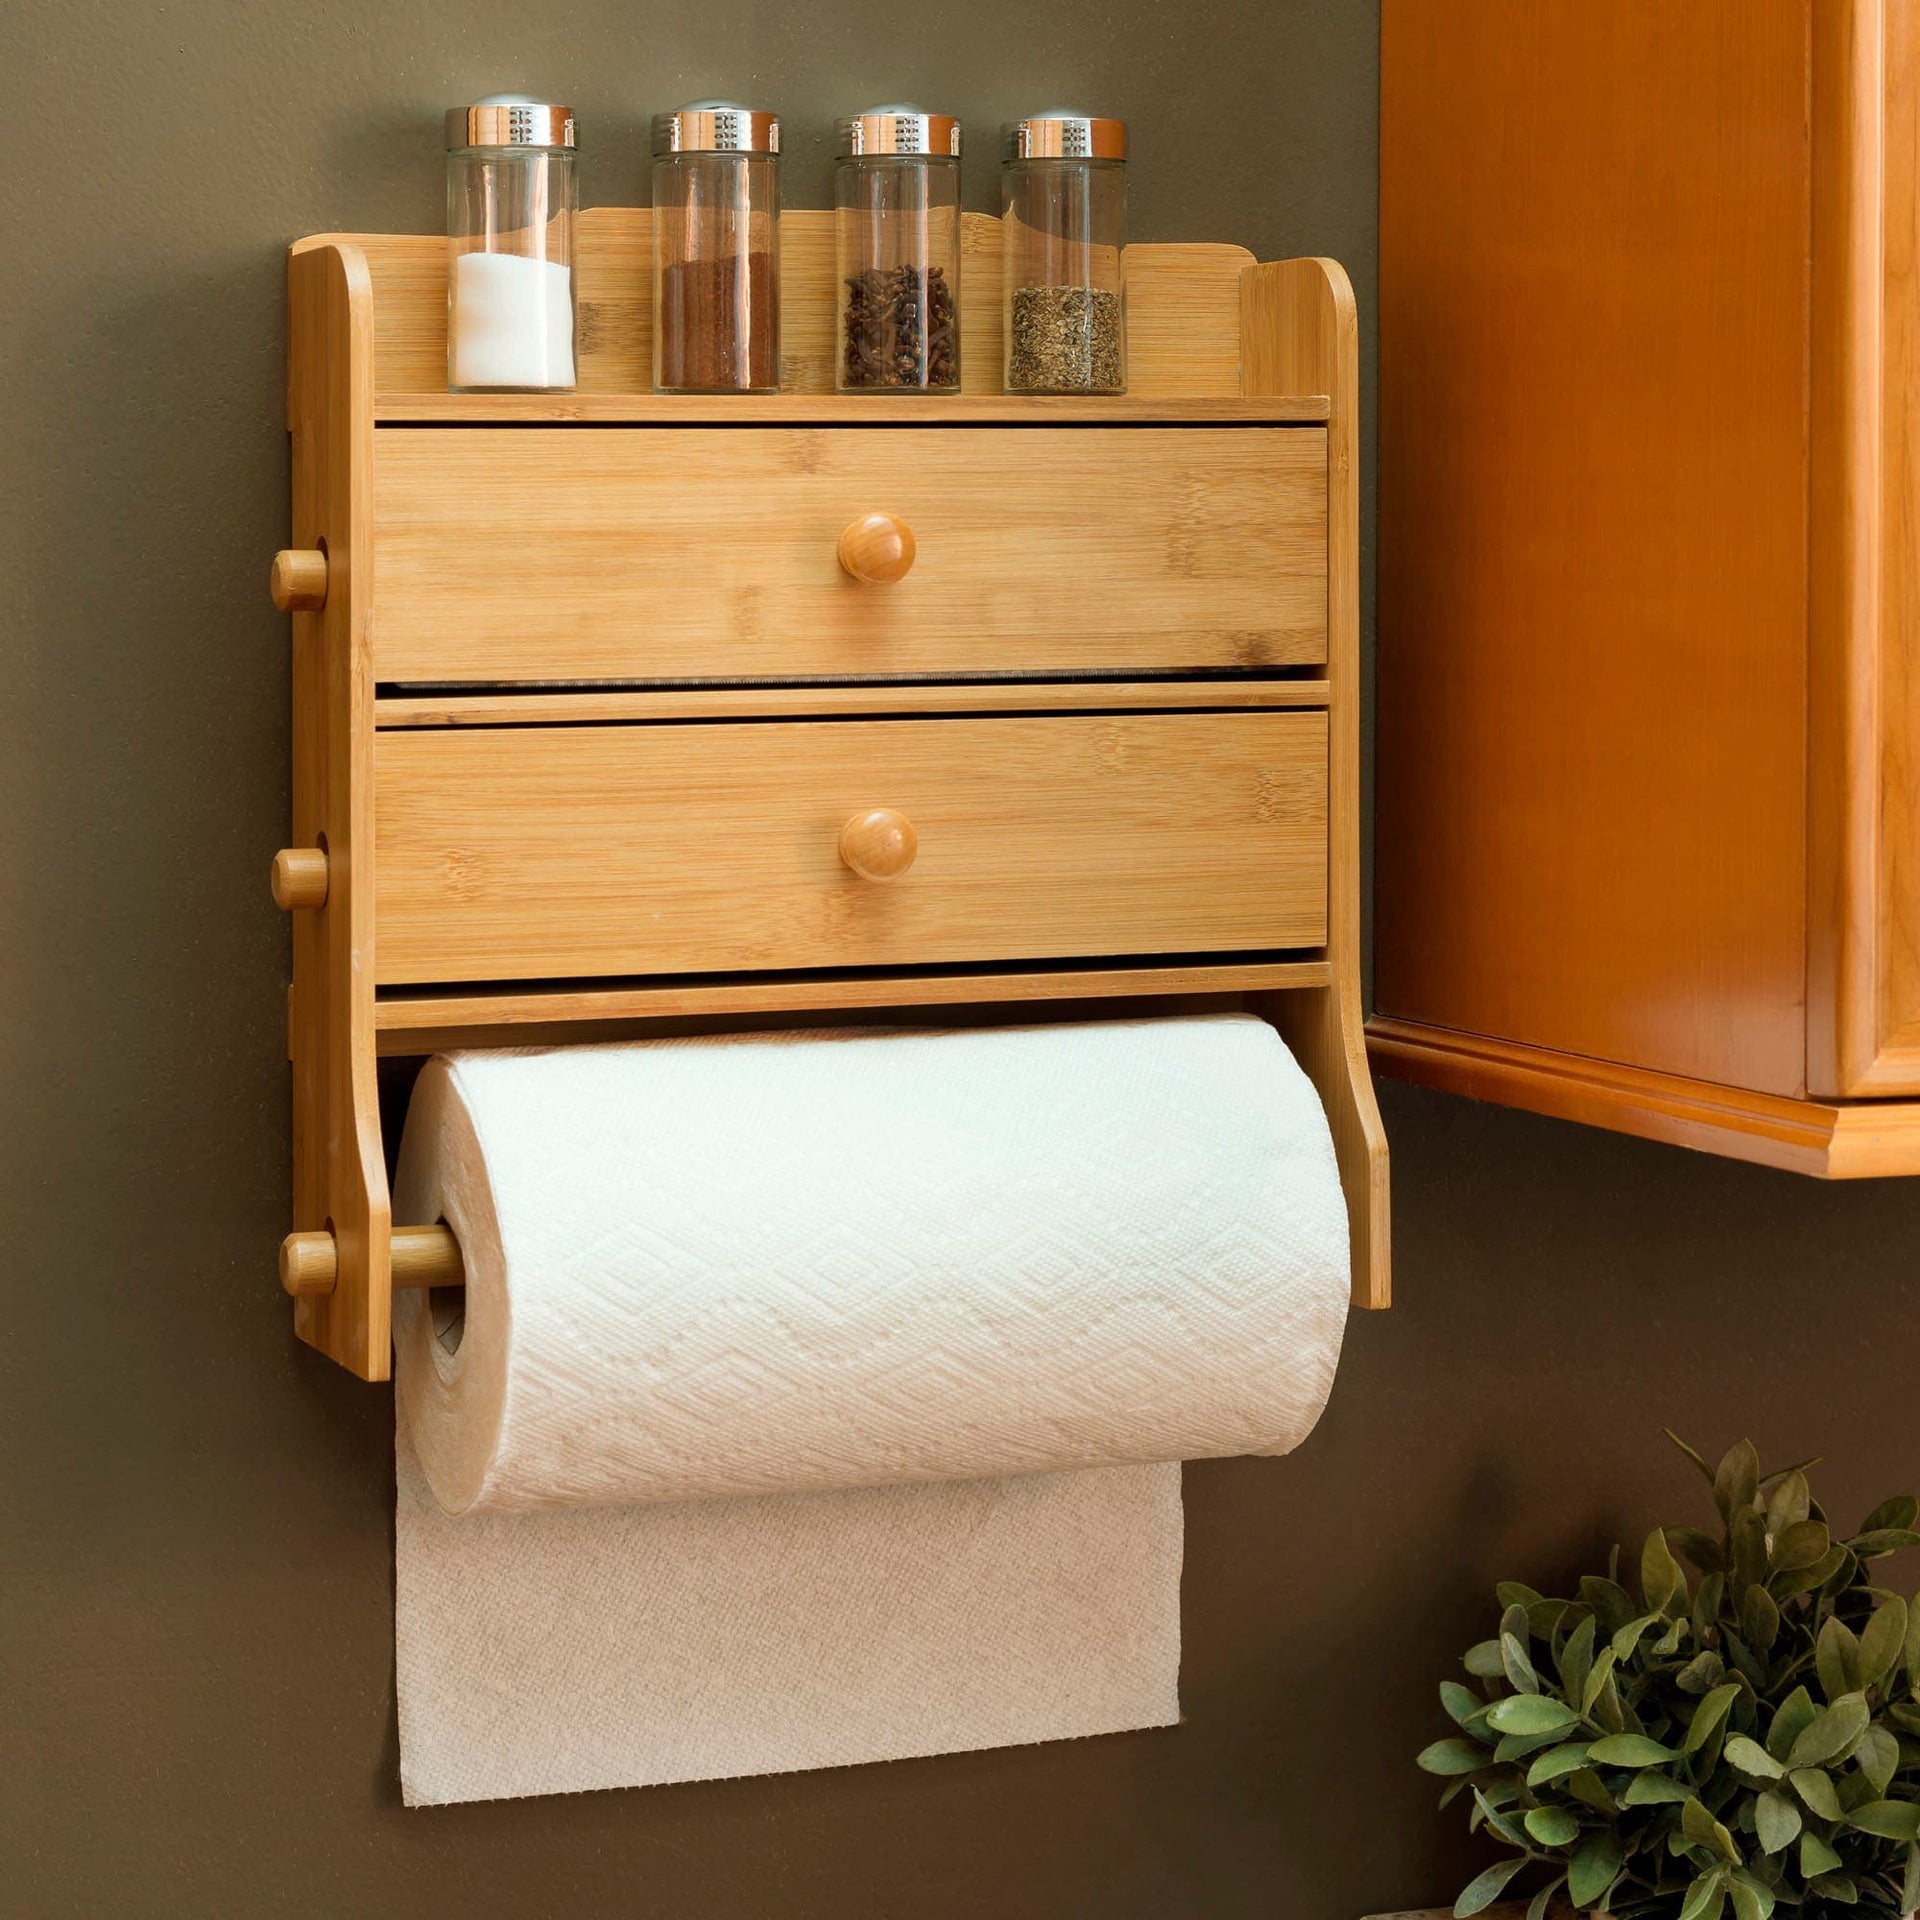 Home Basics Cast Iron Basket Weave Design Paper Towel Holder, Red